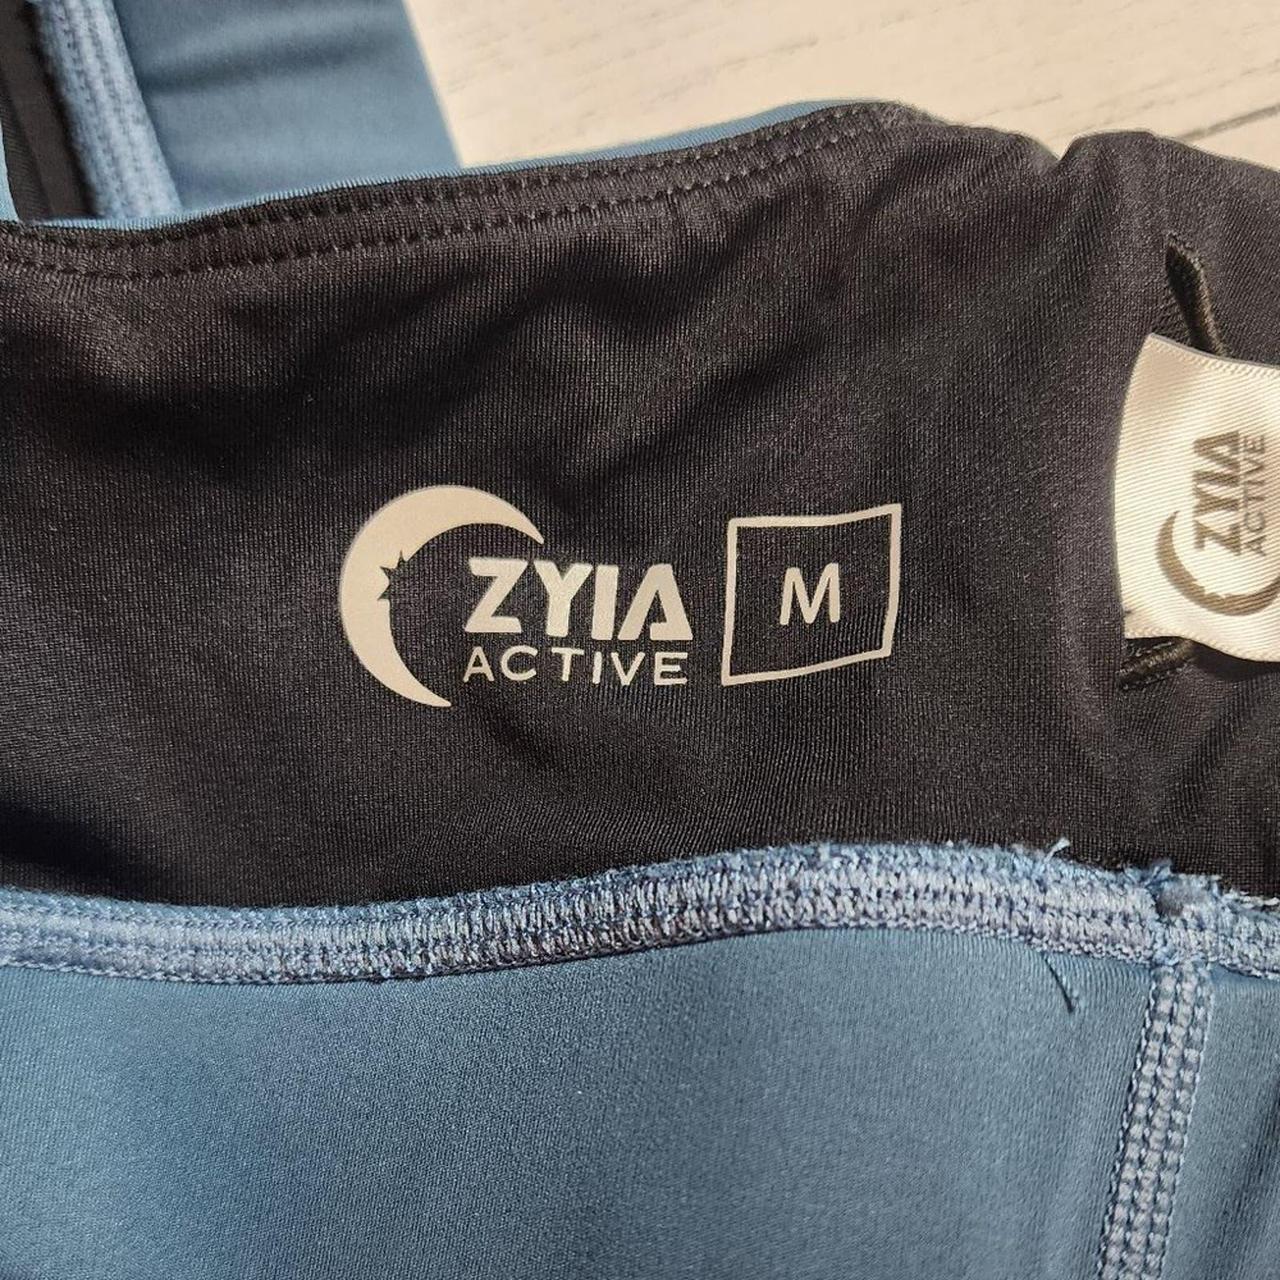 ZYIA Woman's Sports Bra Slate Blue Stripe Luxe Bra